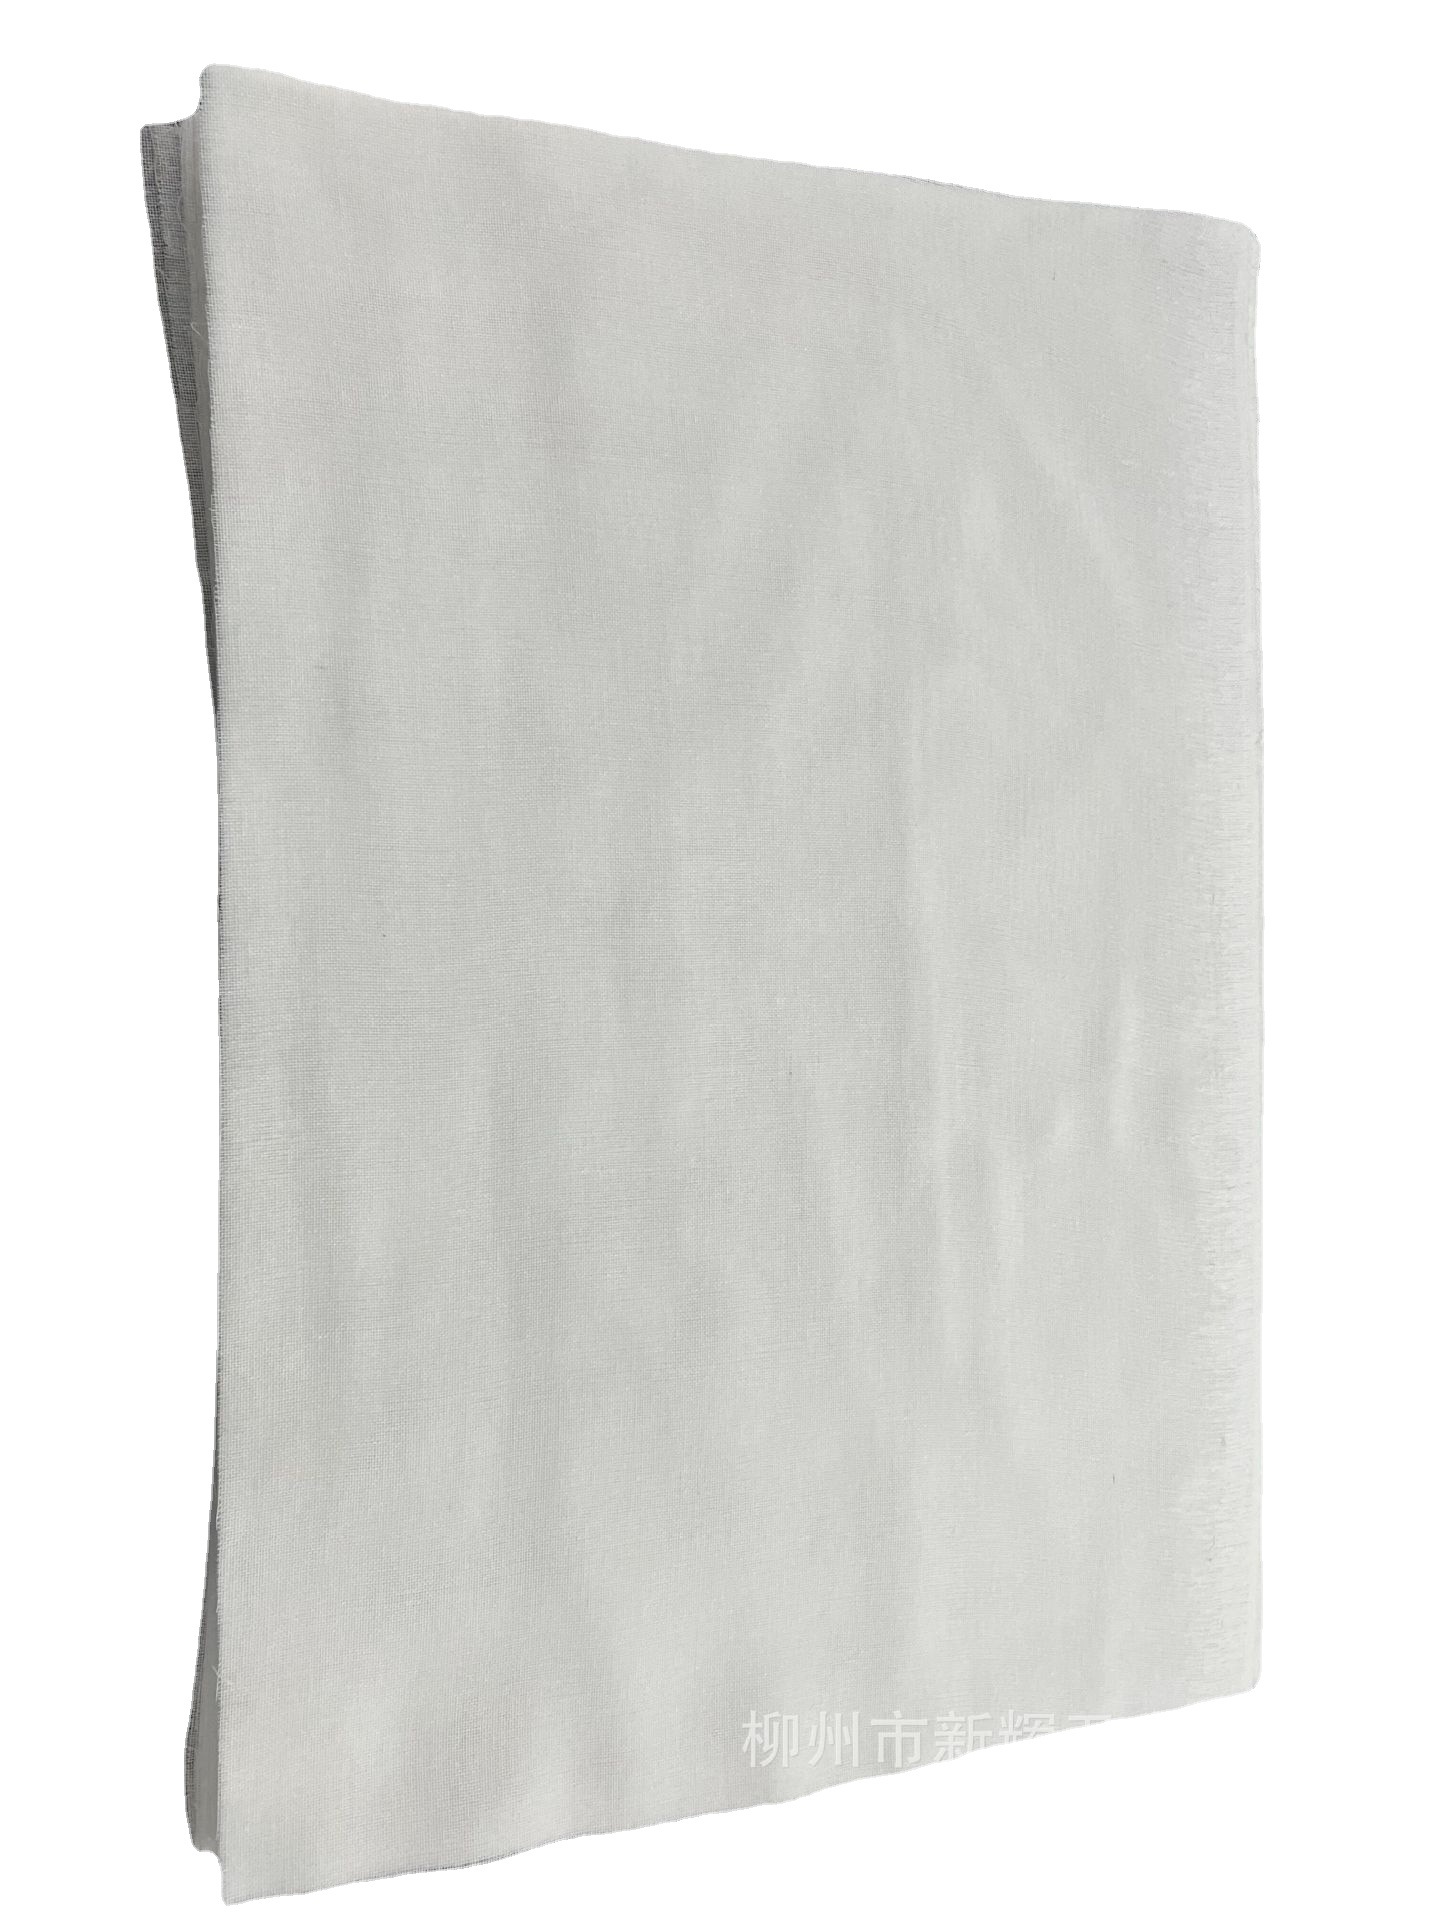 裁切棉纱布尺寸30*35cm 单层白色纱布块 定制脱脂纱布片